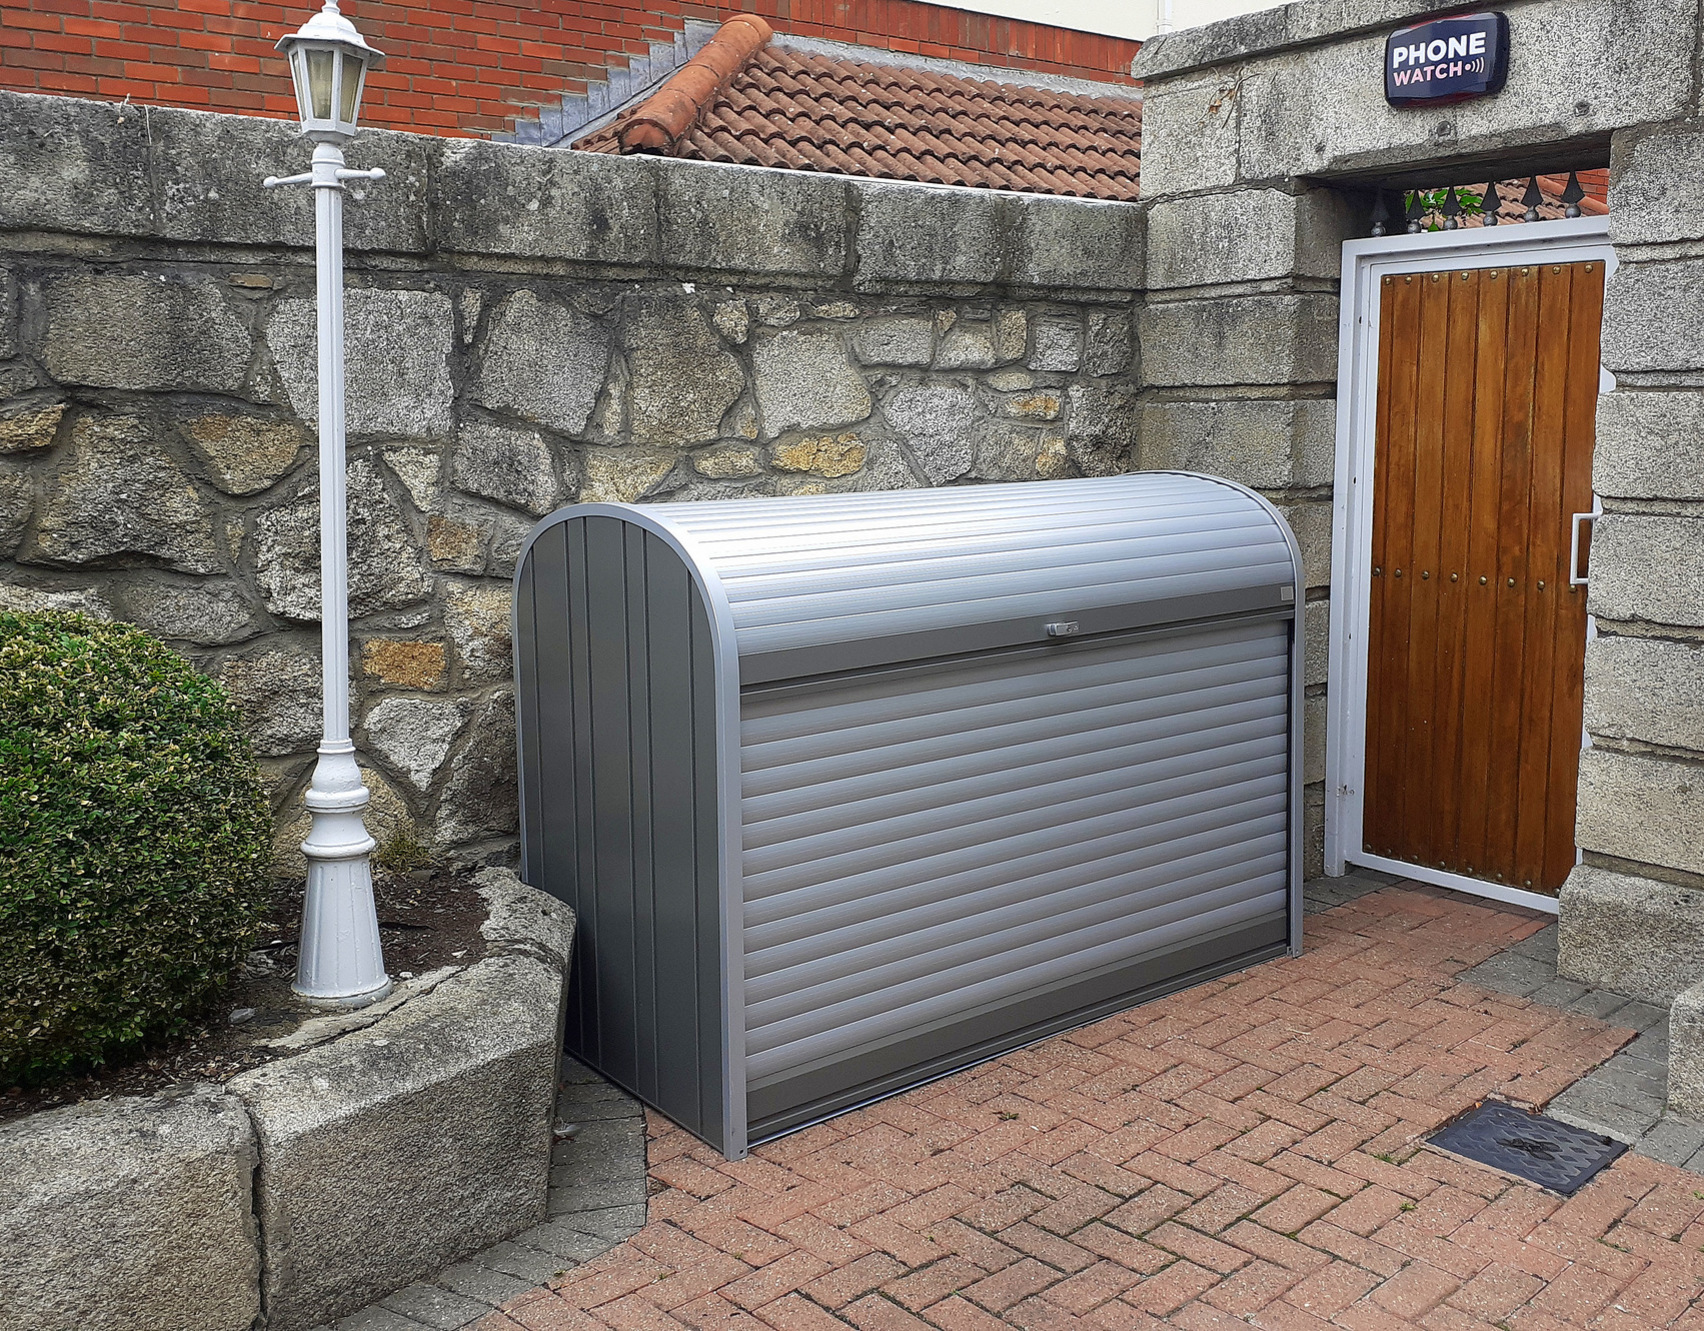 Biohort StoreMax 190 Bike Storage Unit - supplied + fitted in Rathgar, Dublin 6 by Owen Chubb Garden Landscapers. Tel 087-2306 128.